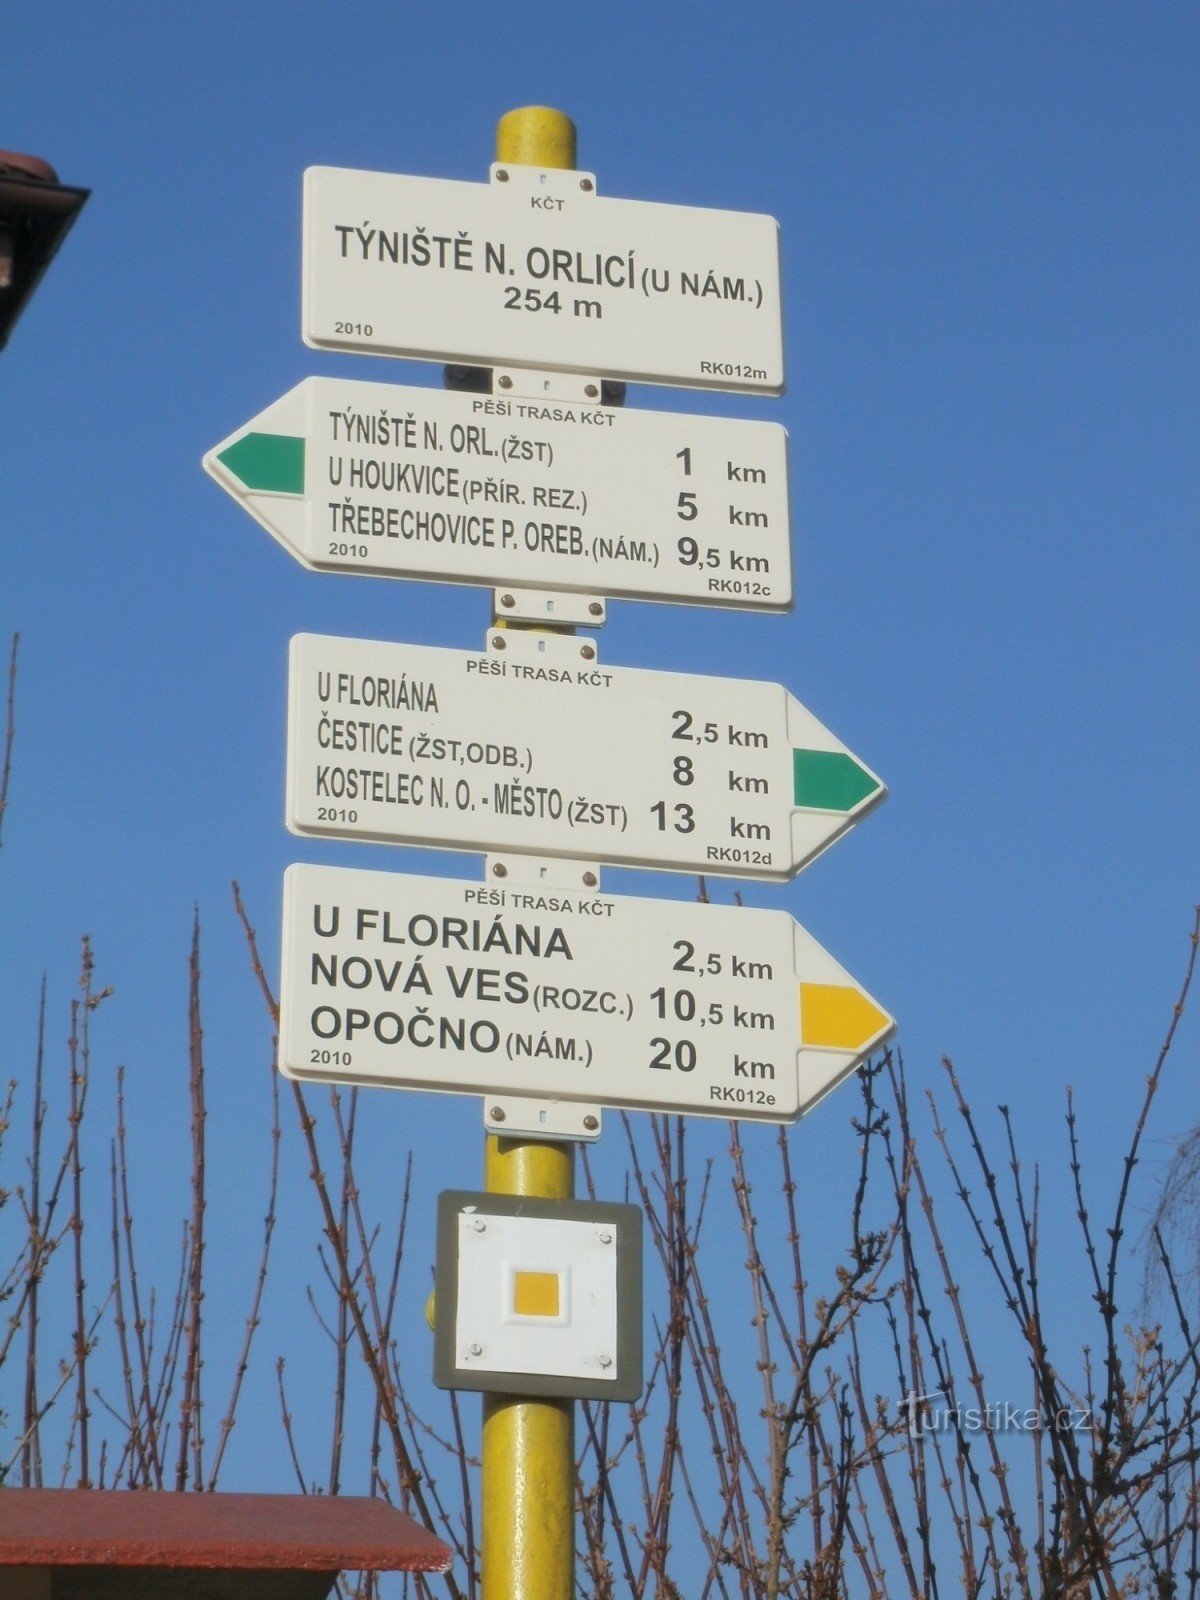 Týniště nad Orlicí - det vigtigste turistskilte